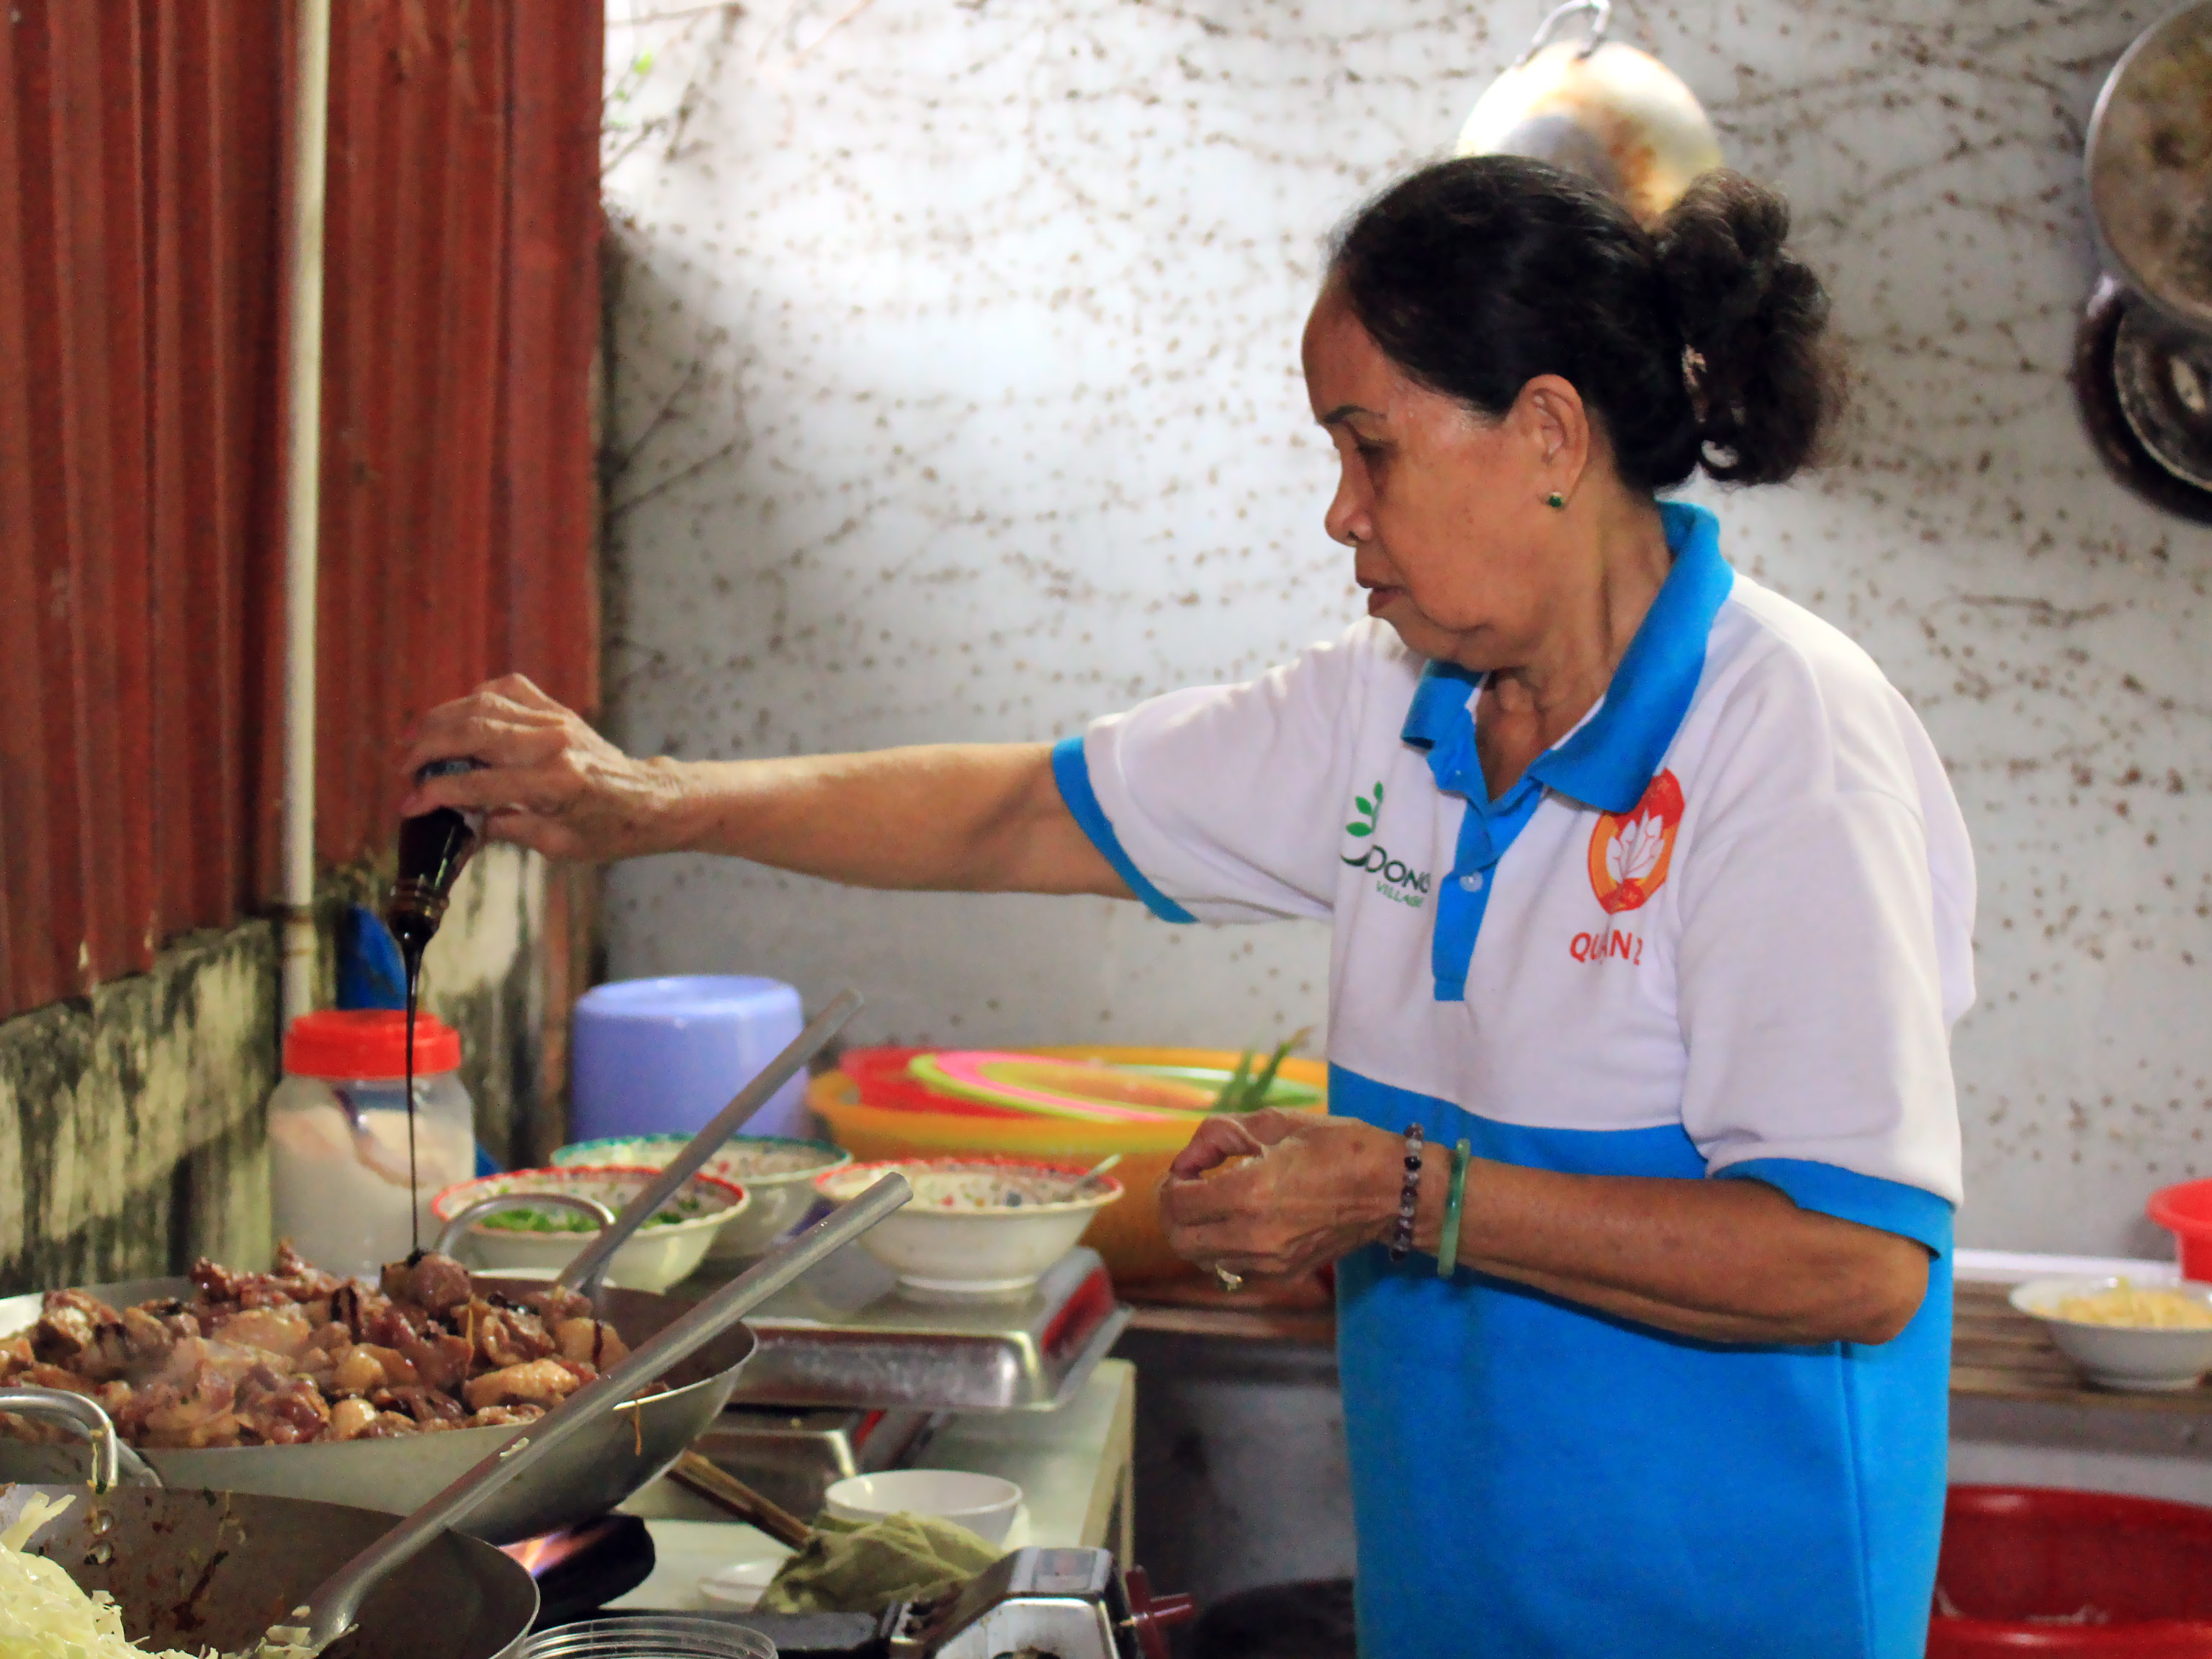 Cô Nguyễn Thị Mai Quỳnh (69 tuổi, bếp trưởng) - người tham gia rất nhiều các hoạt động thiện nguyện của phường An Phú và quận 2 chia sẻ: "Mình không giúp của được thì giúp công. Tuy là việc đơn giản hưng thấy rất vui và thoải mái tinh thần".